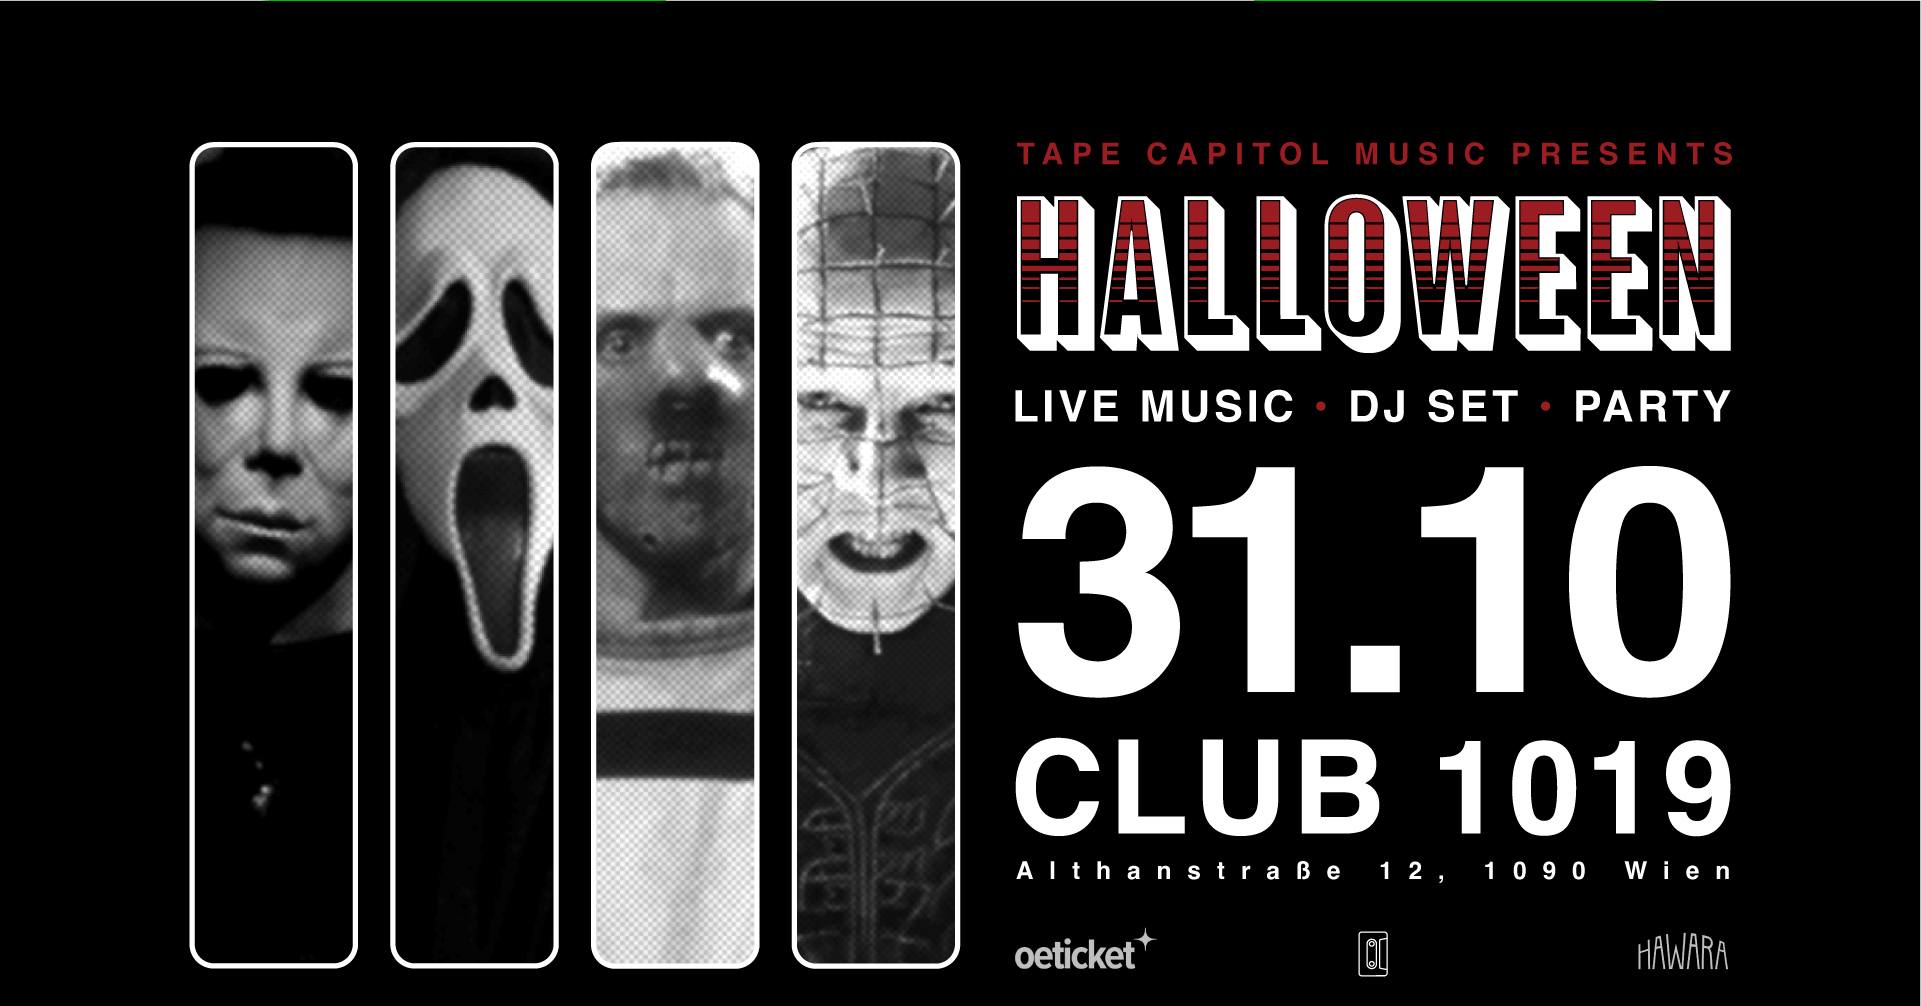 Halloween Party am 31. October 2022 @ 1019 Jazzclub.